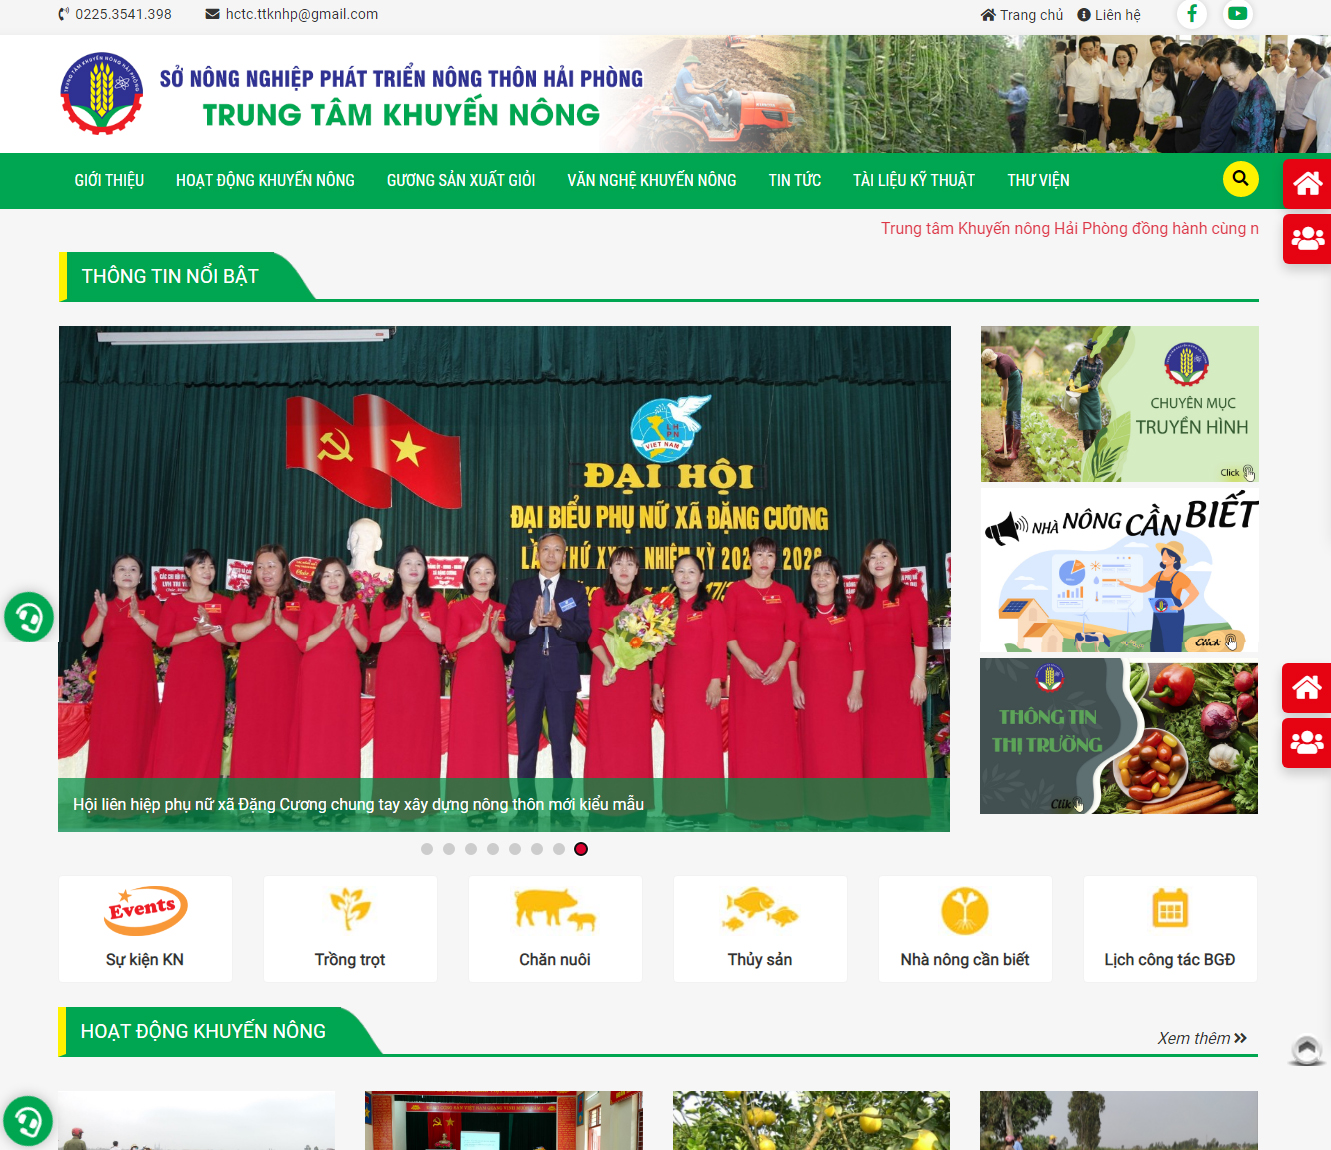 Thiết kế website Trung Tâm Khuyến Nông Hải Phòng